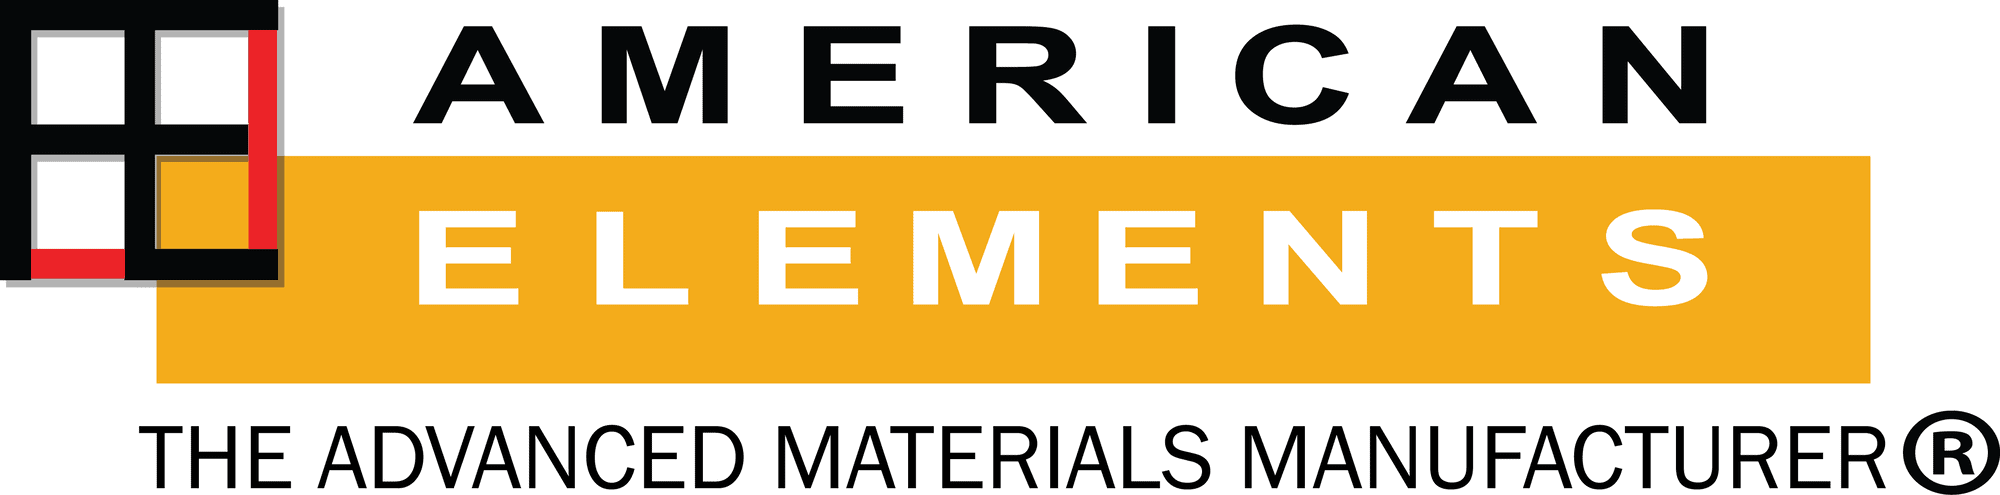 美国 - 元素 - 先进 - 技术陶瓷 - 粉末烧结 - 压电 - 储能 - 光电子玻璃